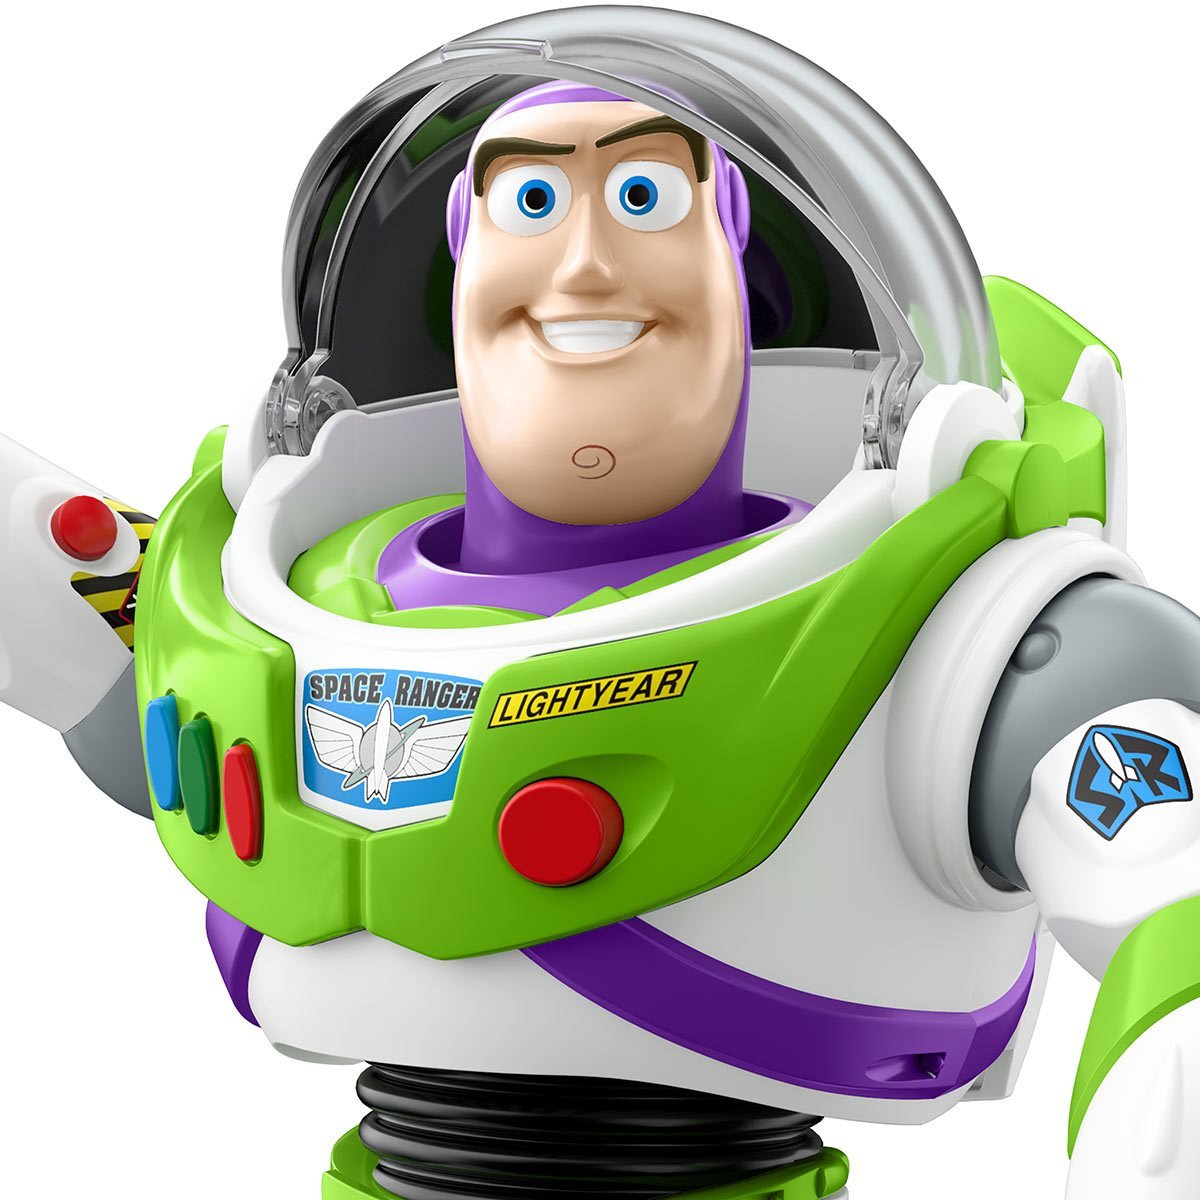 Remontarse Posicionar Anciano Disney Pixar Toy Story Action-Chop Buzz Lightyear